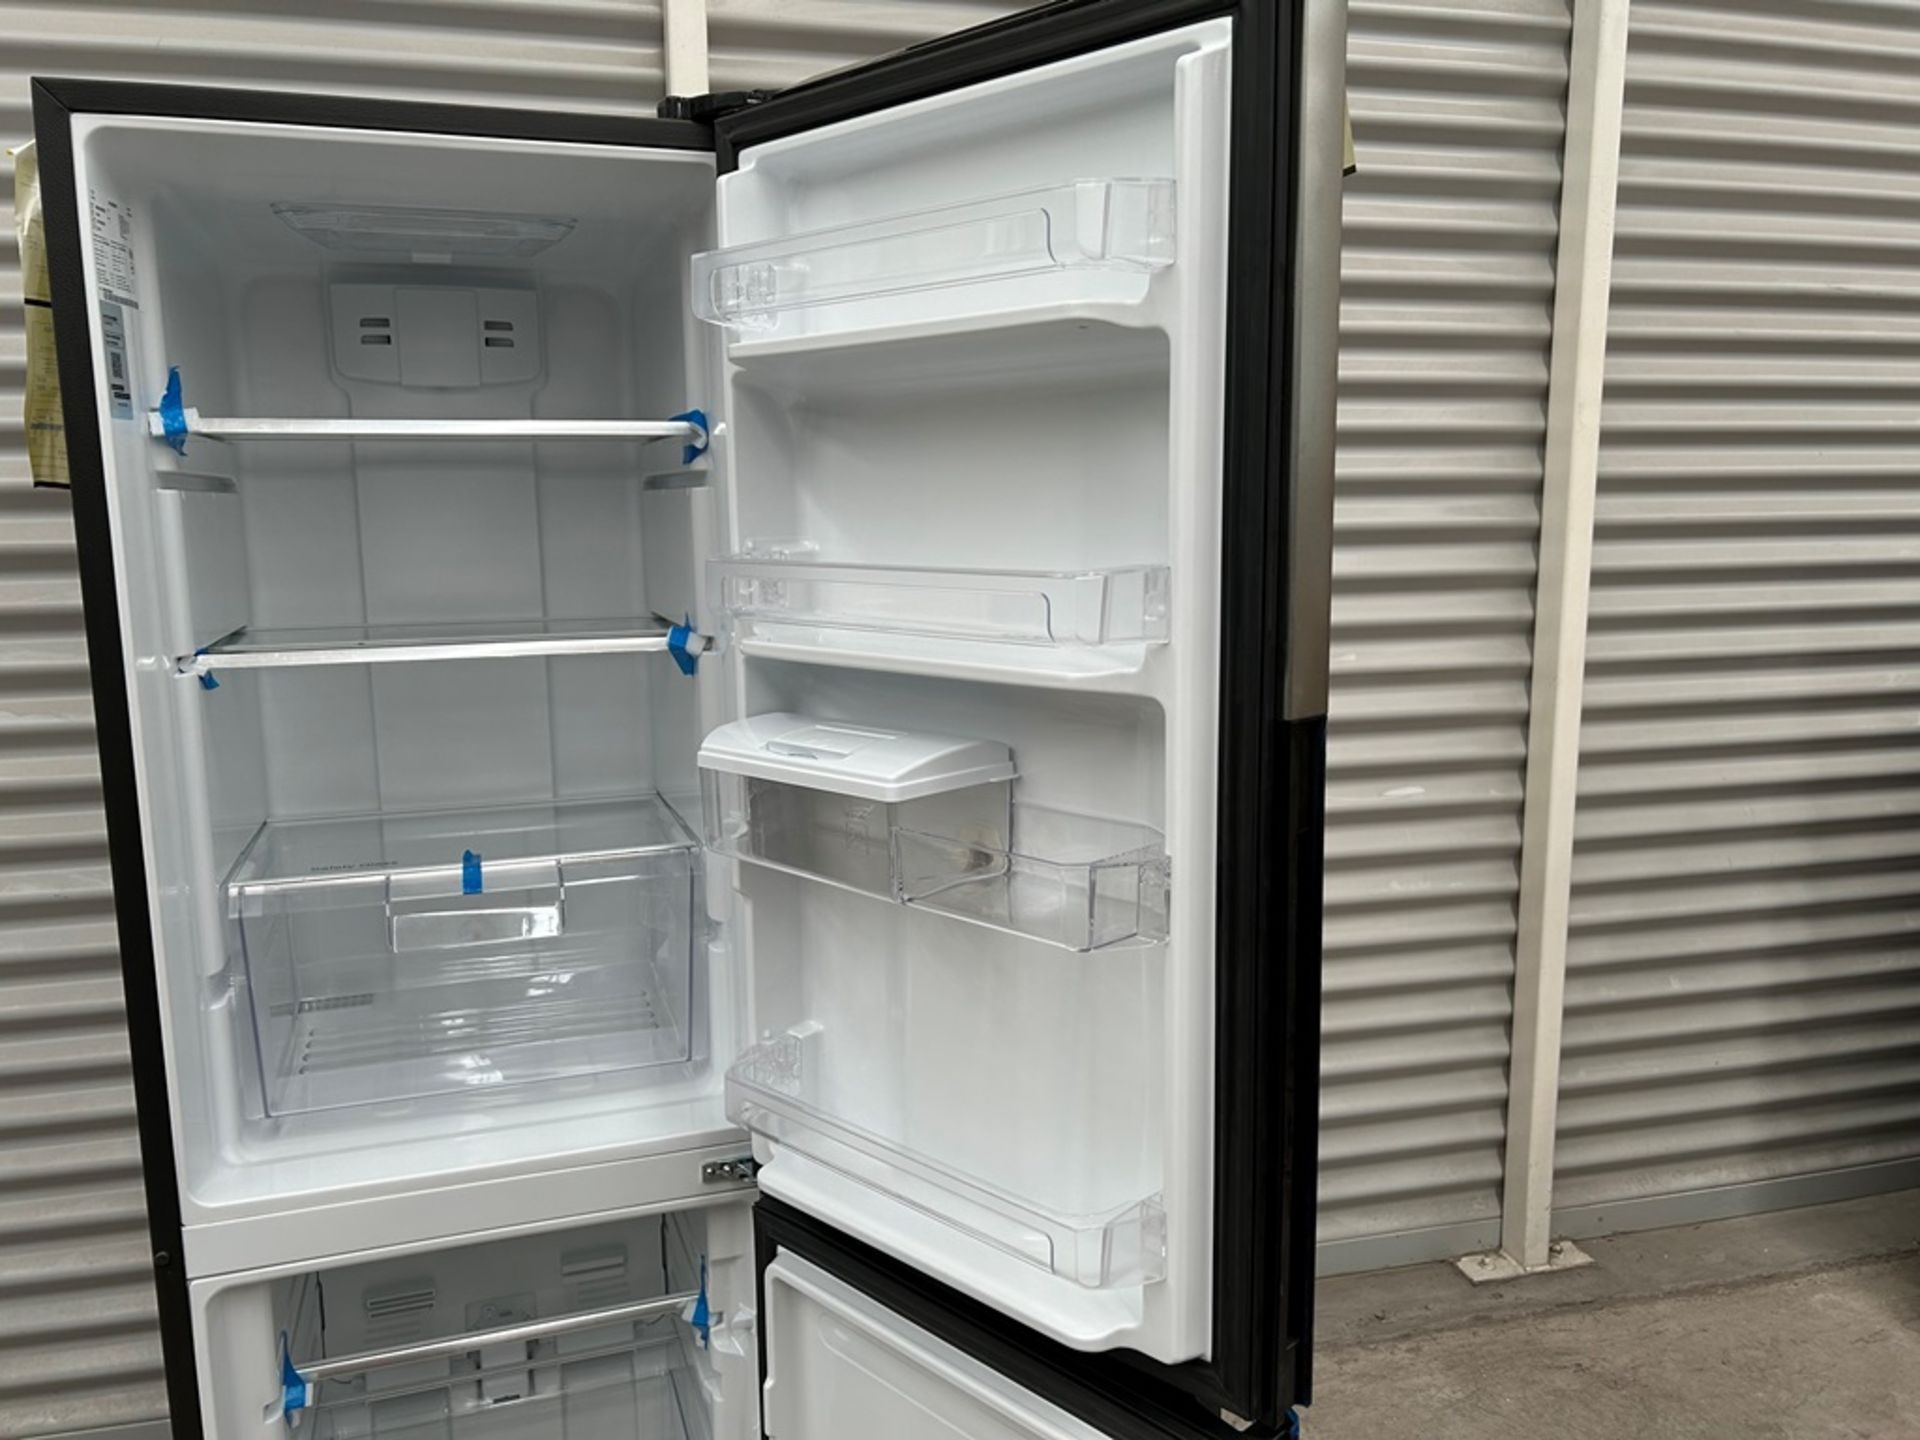 Refrigerador con dispensador de agua Marca MABE, Modelo RMB300IZMRP0, Serie 09334, Color GRIS (Equi - Image 6 of 9